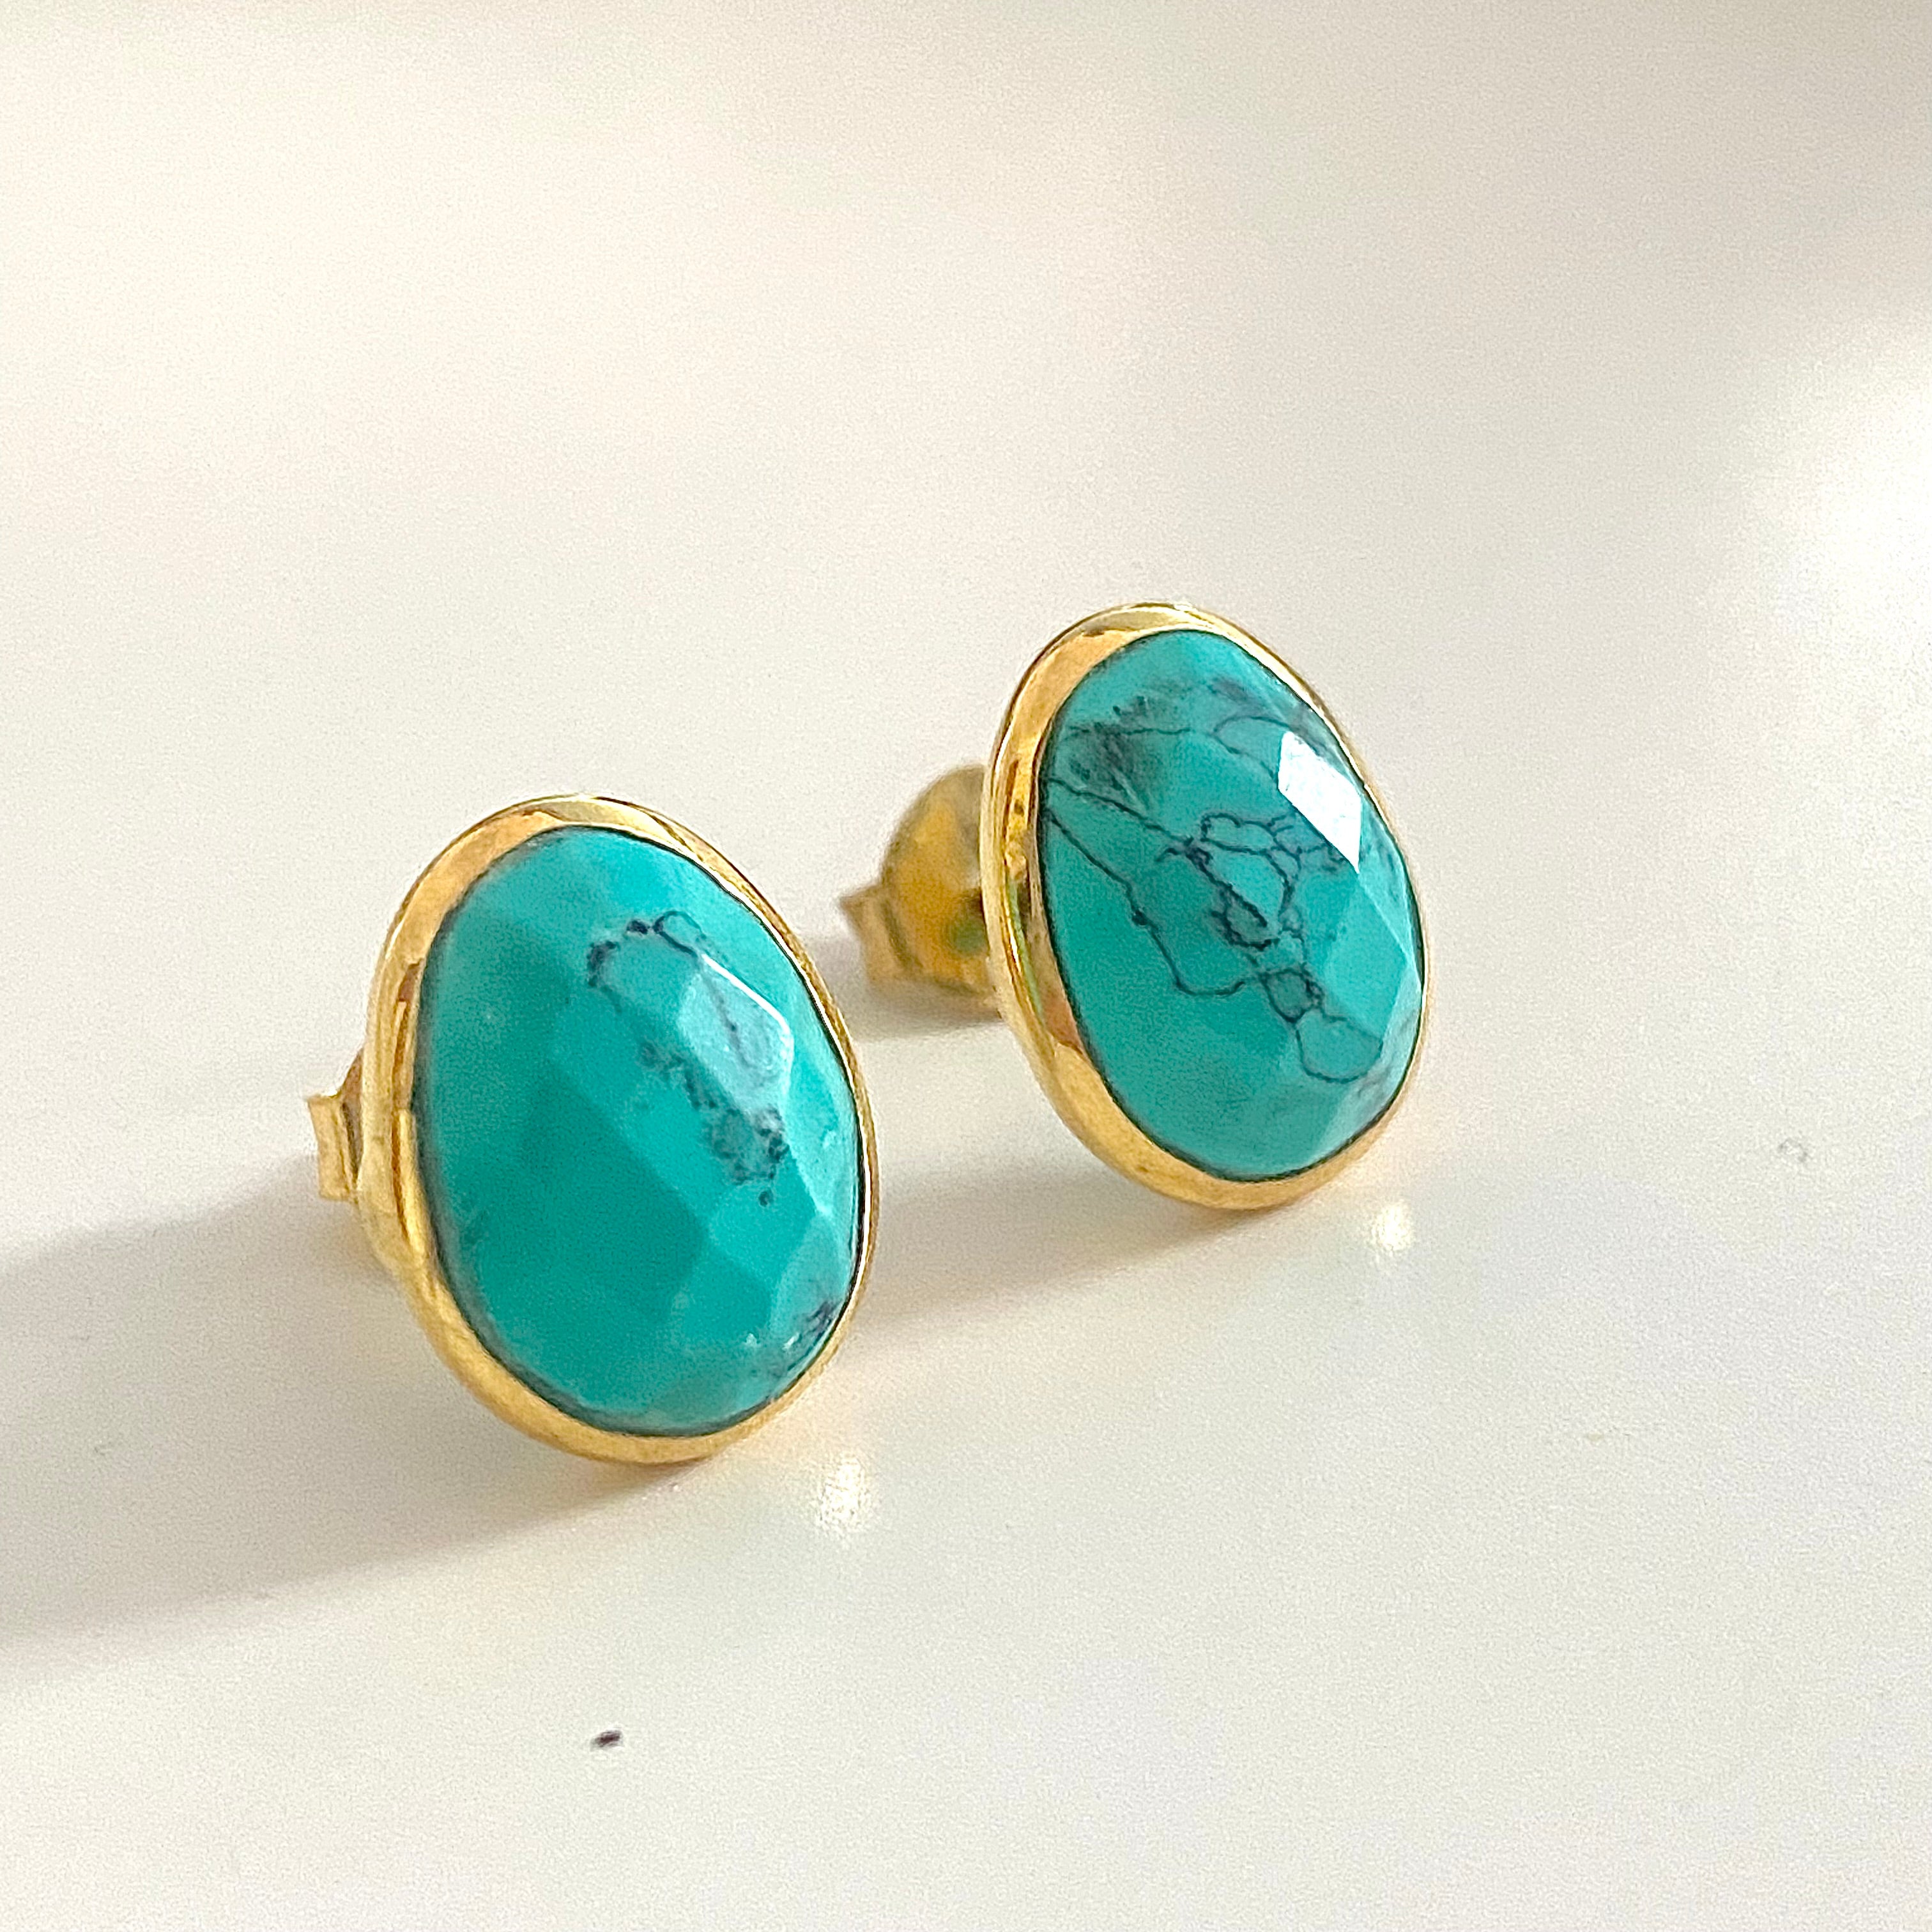 Turquoise Organic Elliptical Shaped Gemstone Studs 